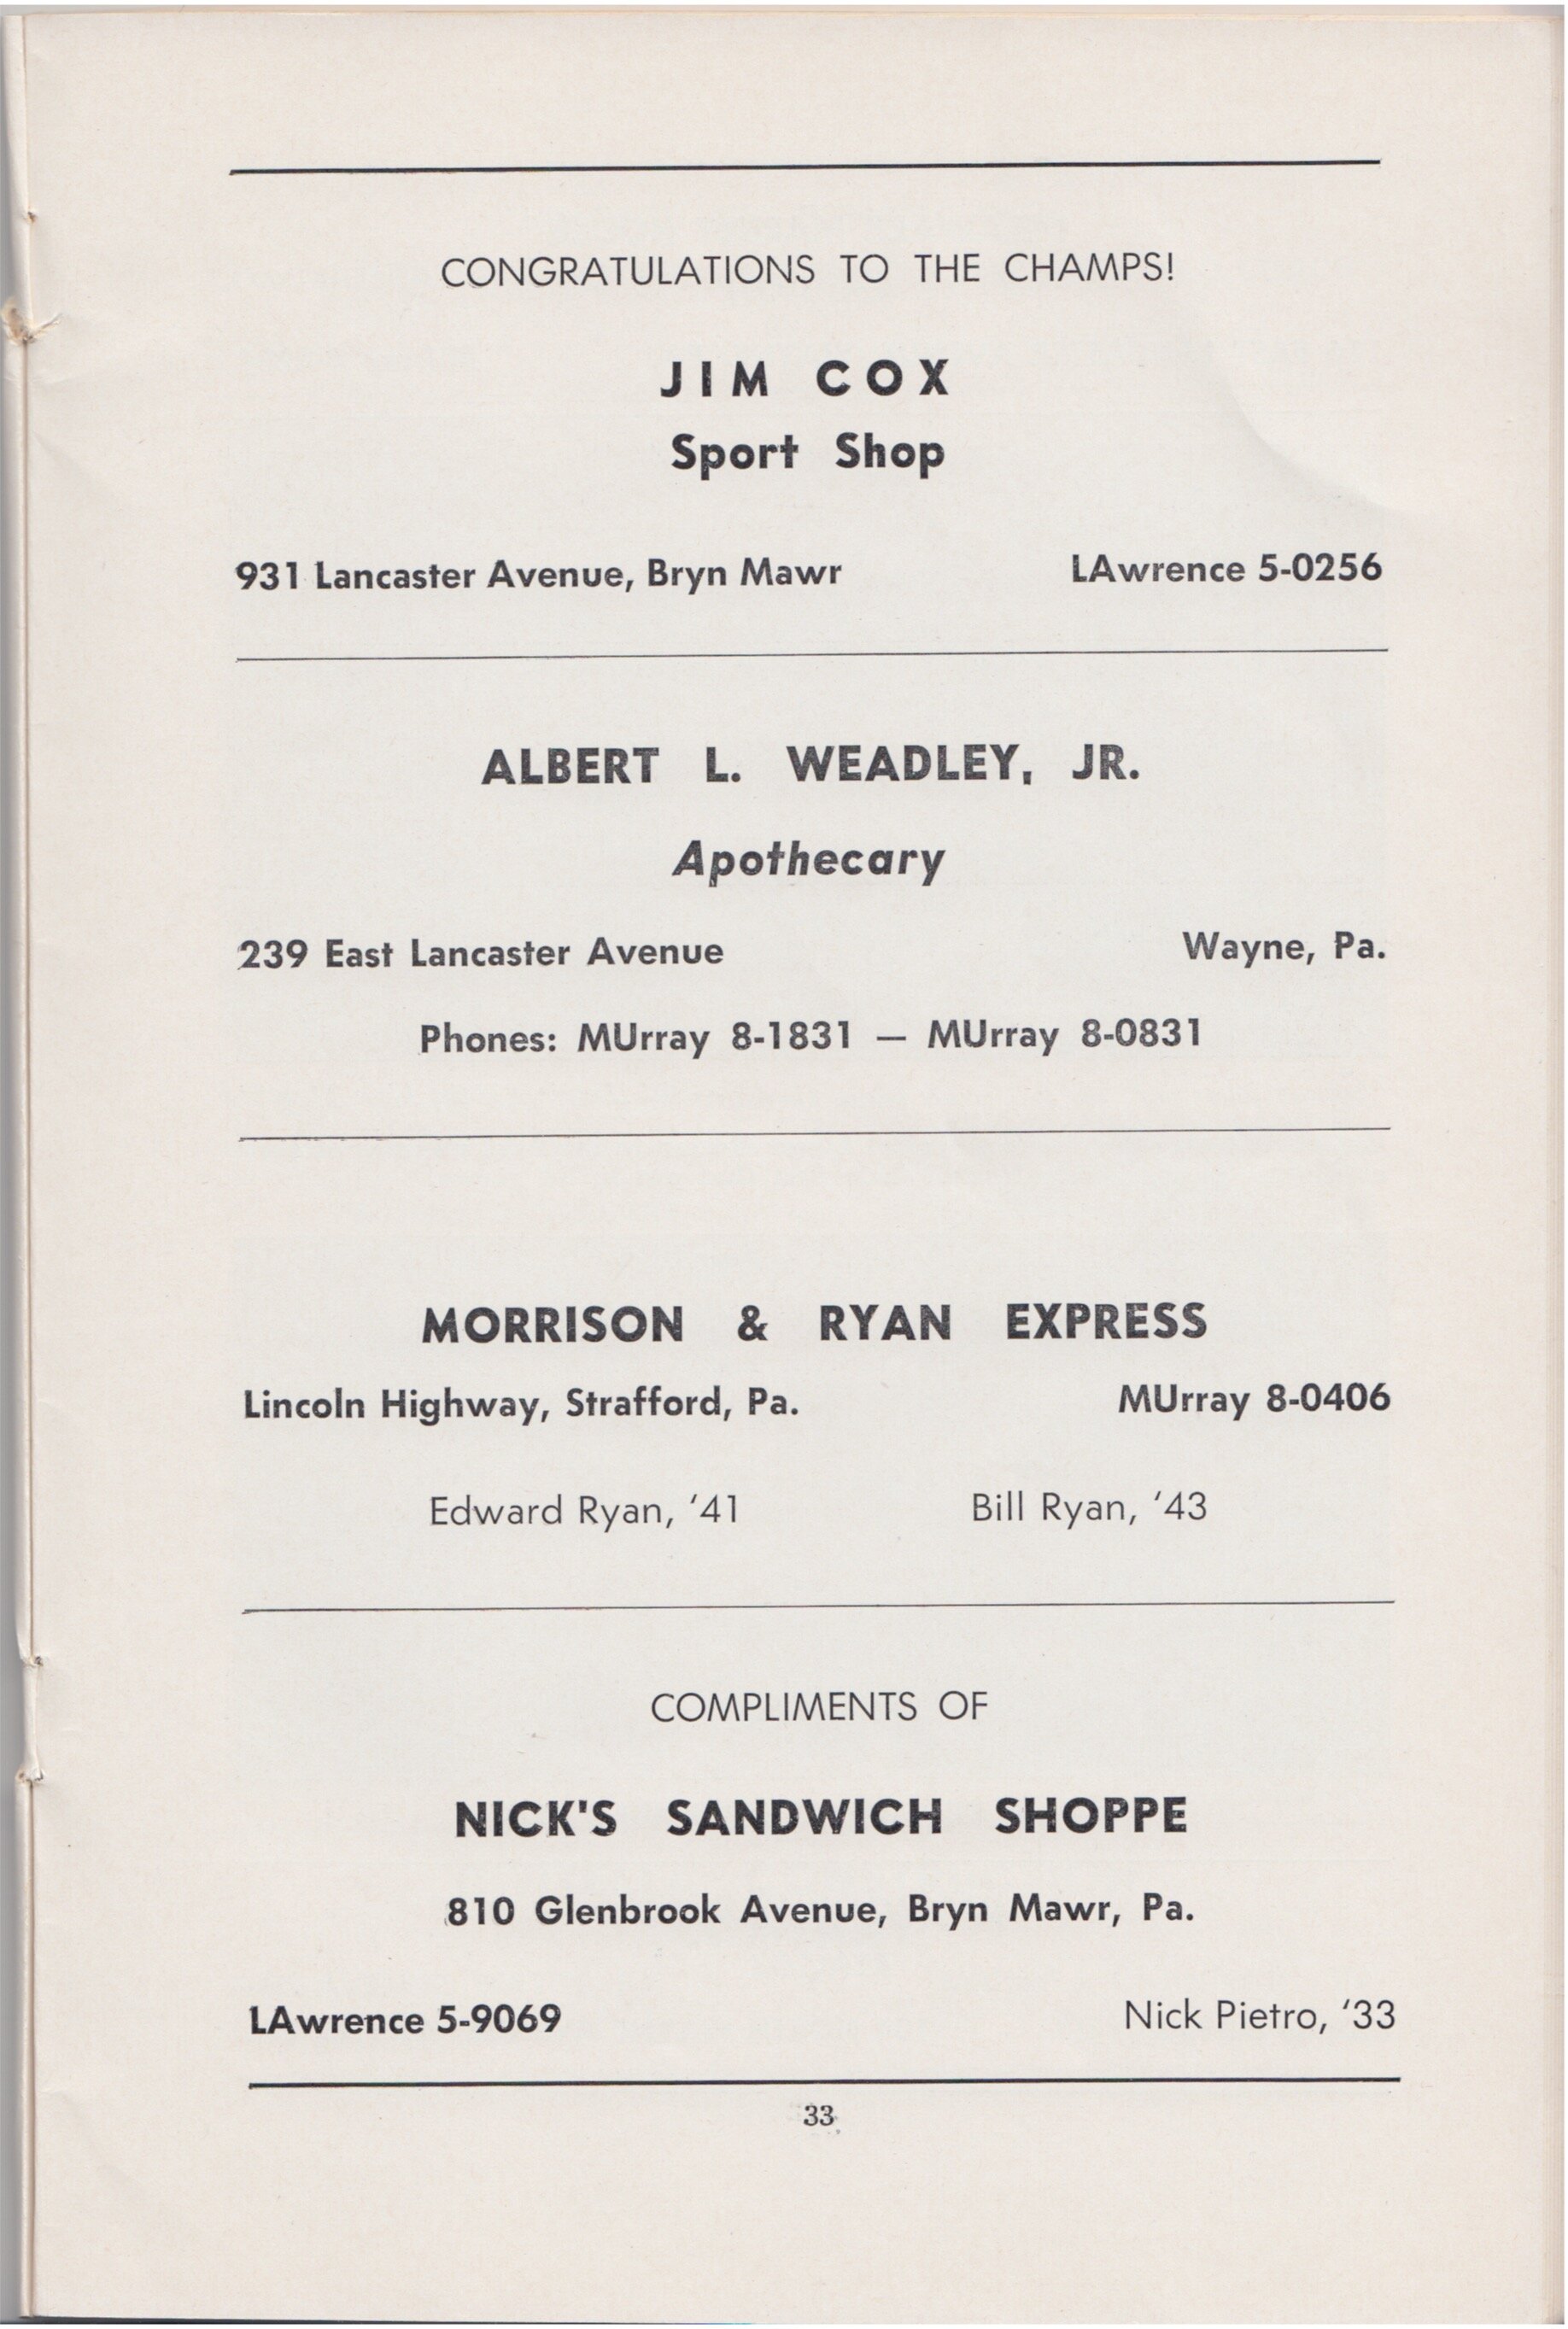 1957 BanquetRHistS 31.jpeg